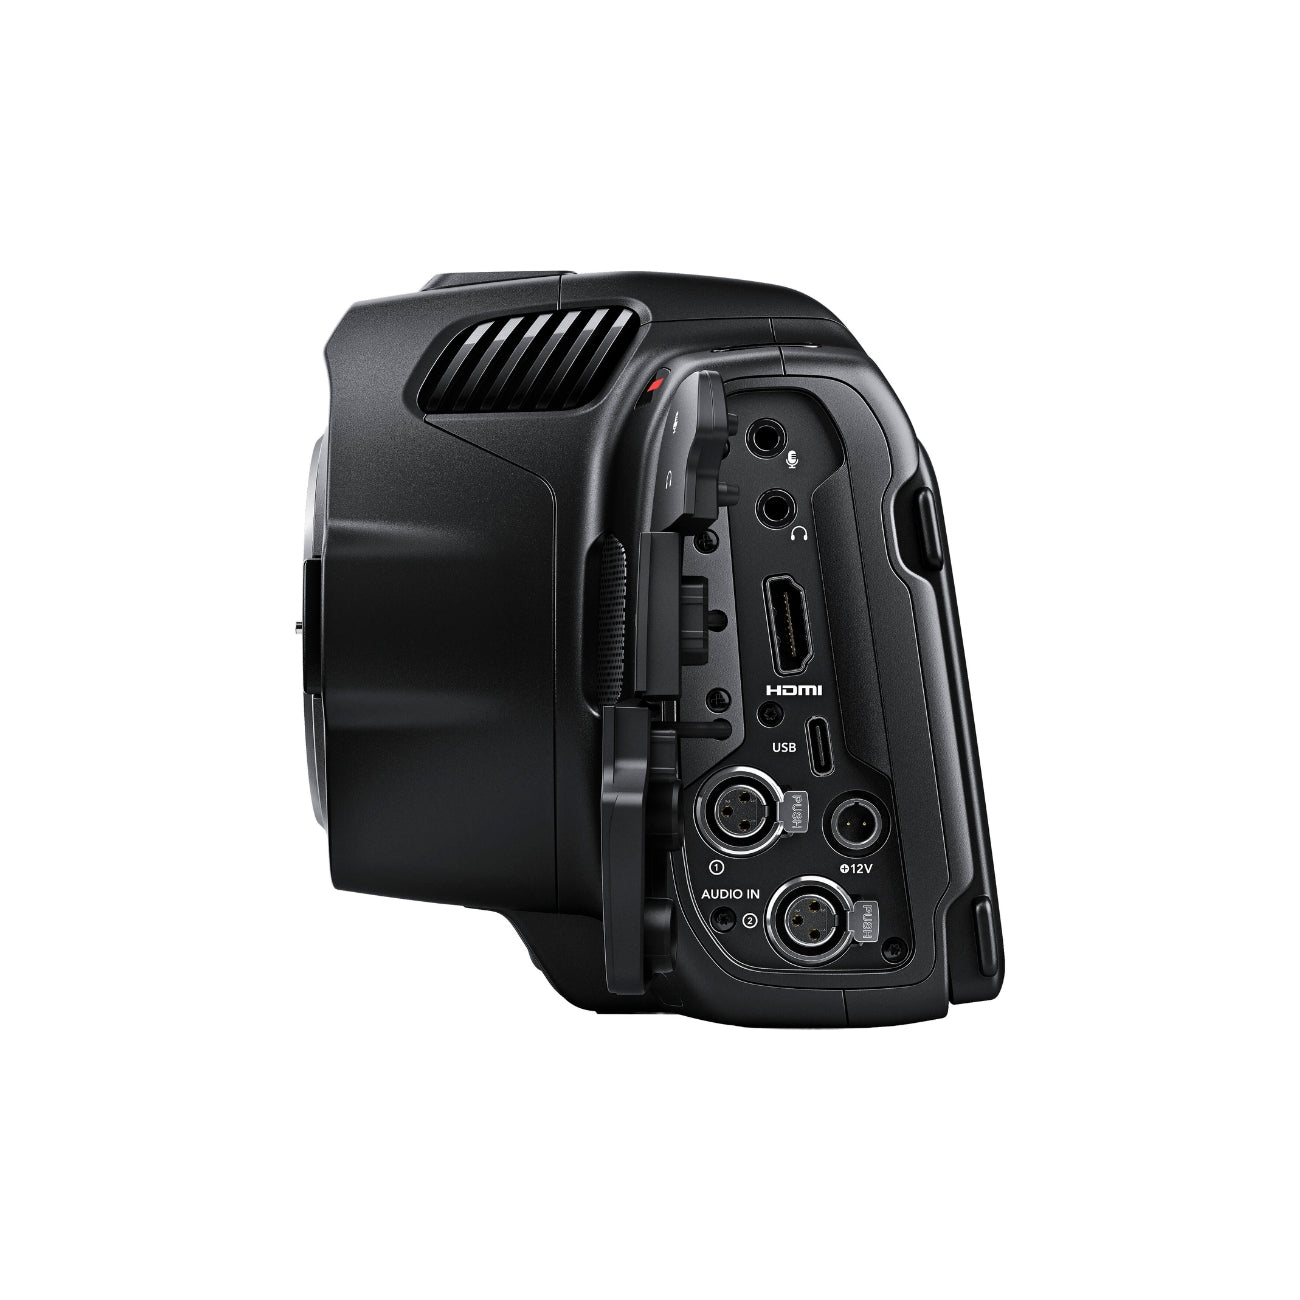 Blackmagic Pocket Cinema Camera 6K Pro with DaVinci Resolve Studio